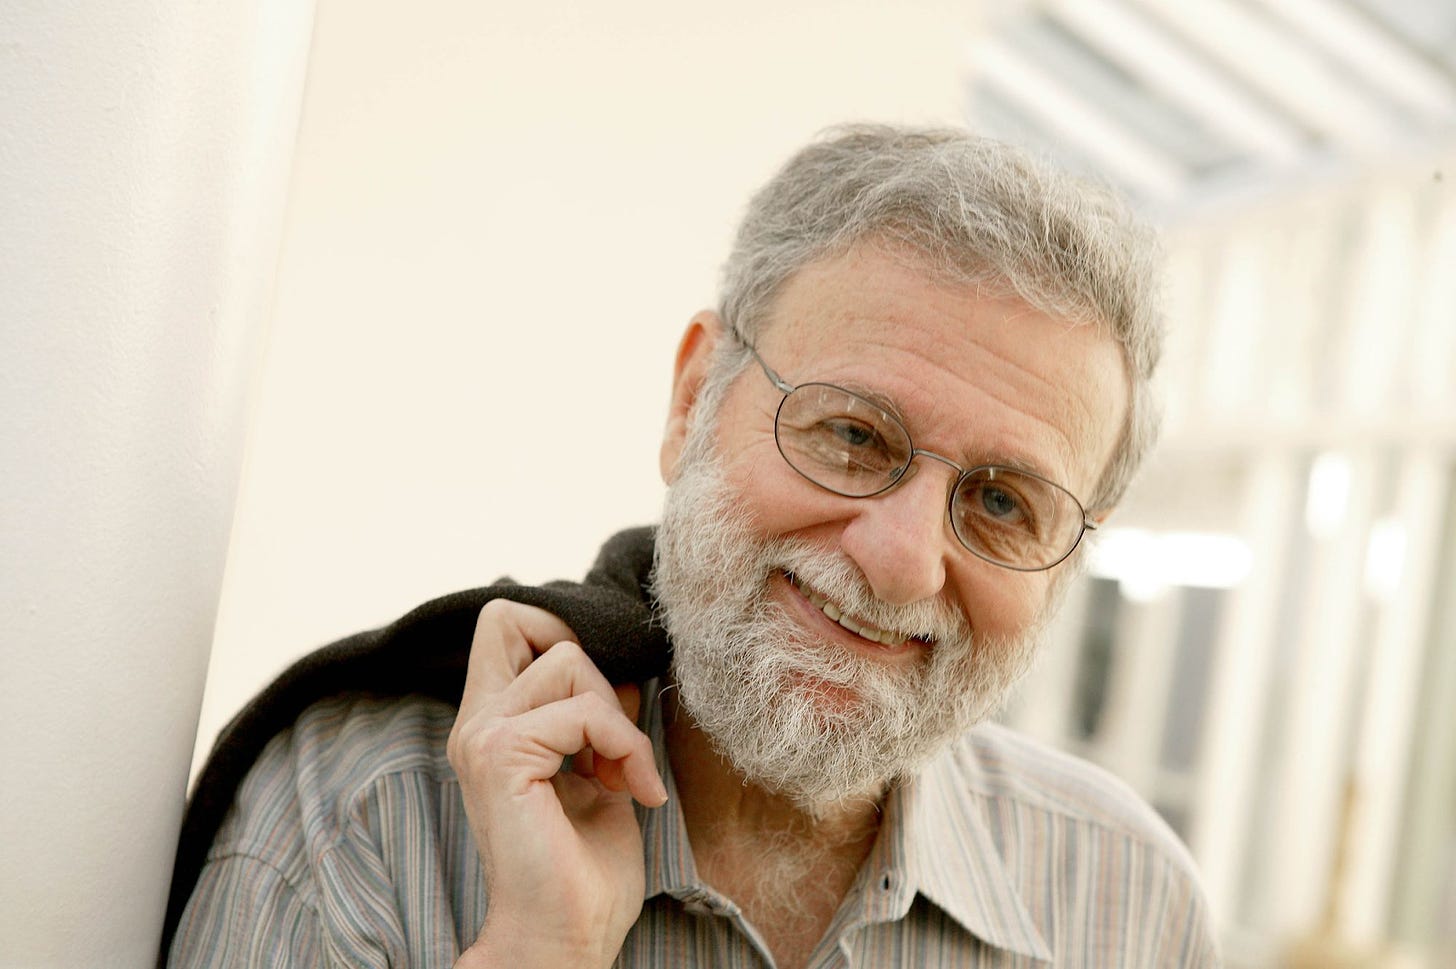 Foto mostra Don Norman, criador das expressões “Design centrado no usuário” e “Experiência do Usuário” em pose informal, de óculos, barba, sorrindo, recostado em uma parede e segurando um casaco no ombro.